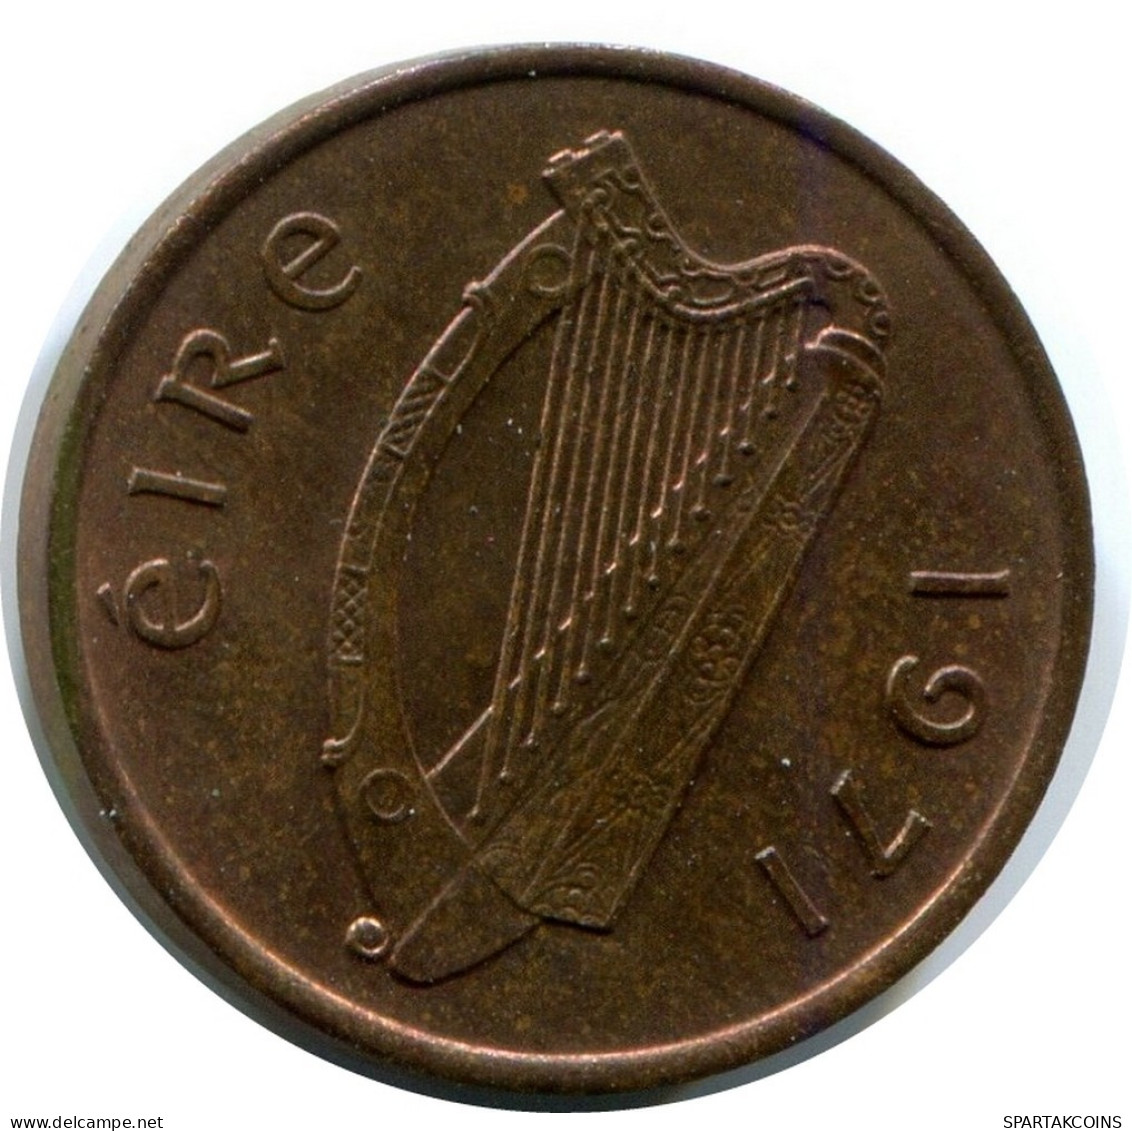 1/2 PENNY 1971 IRELAND Coin #AX112.U.A - Irlande